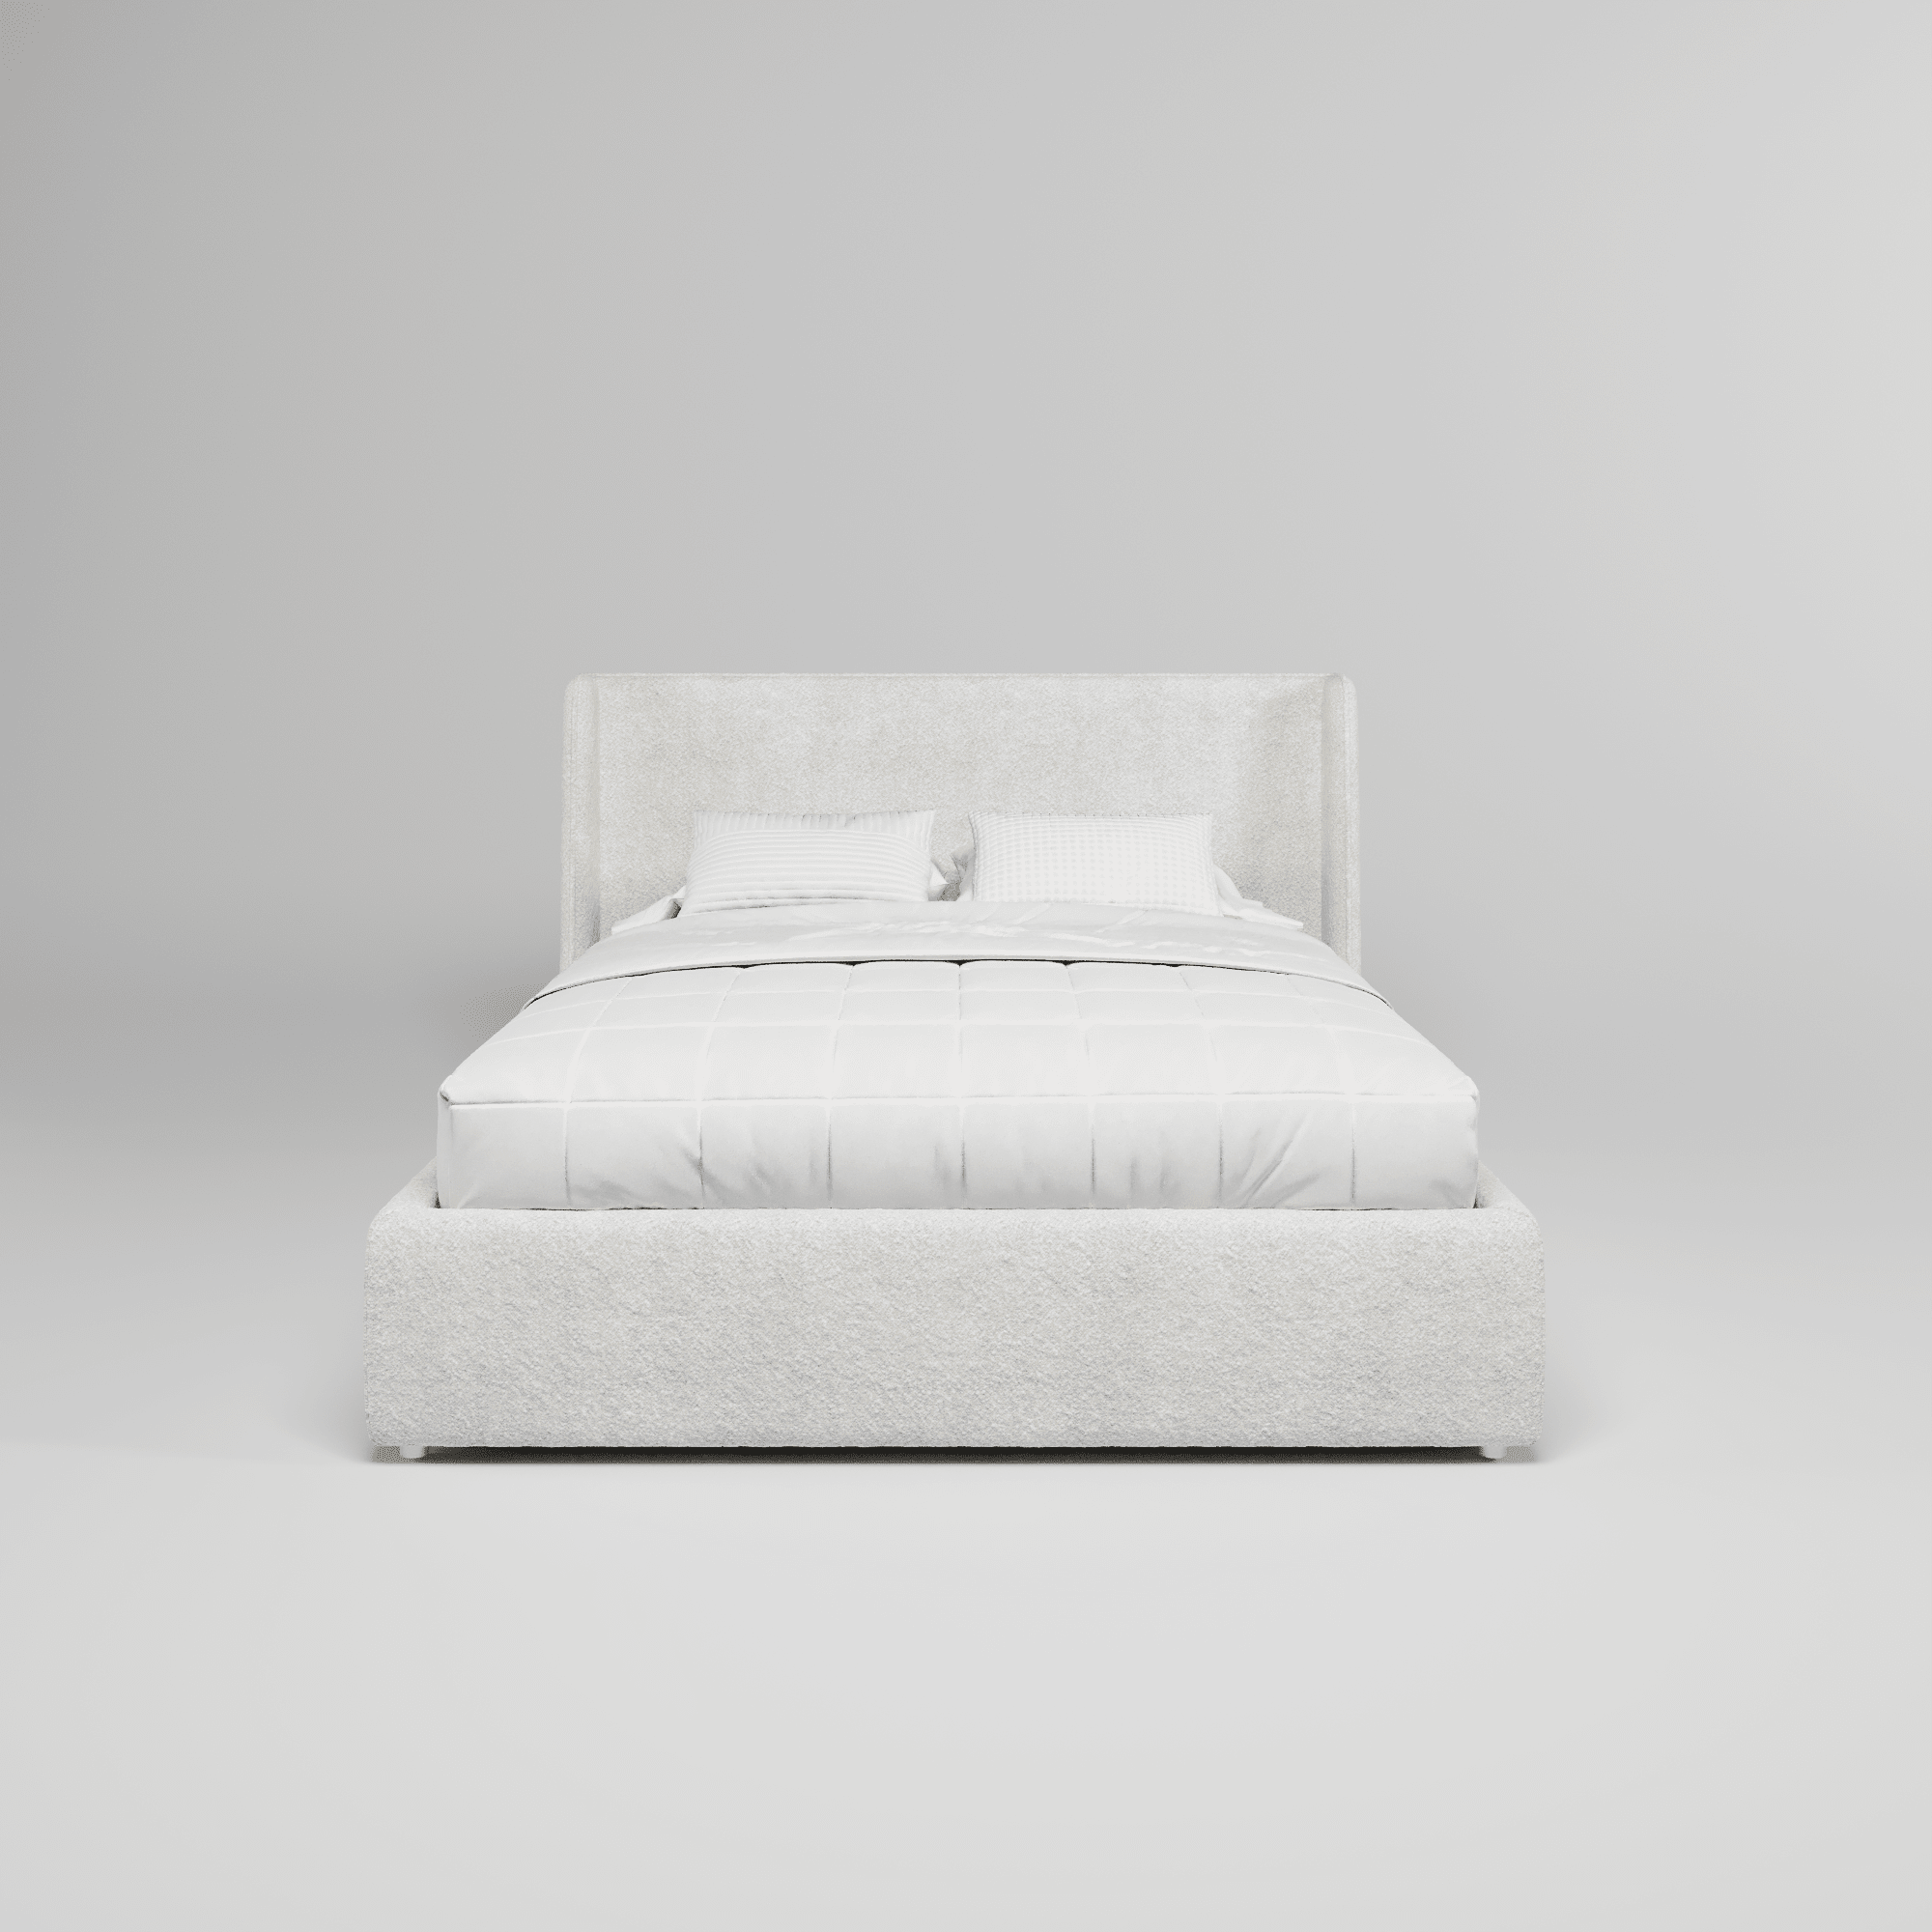 Кровать двуспальная мягкая Lora с подъемным механизмом, 120x200